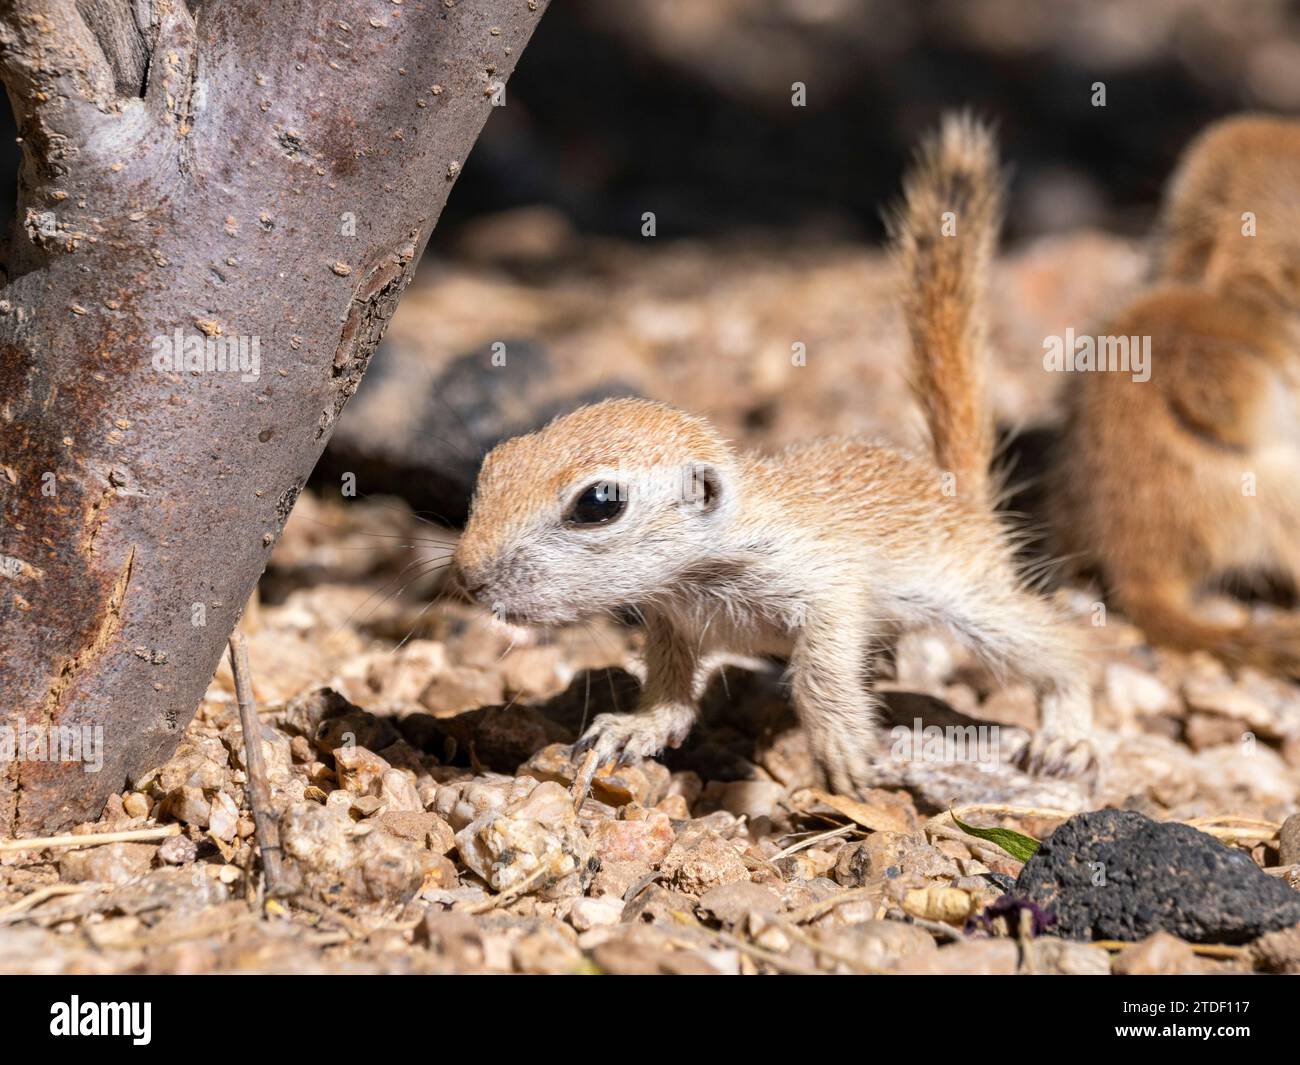 Round-tailed ground squirrel (Xerospermophilus tereticaudus), Brandi Fenton Park, Tucson, Arizona, United States of America, North America Stock Photo